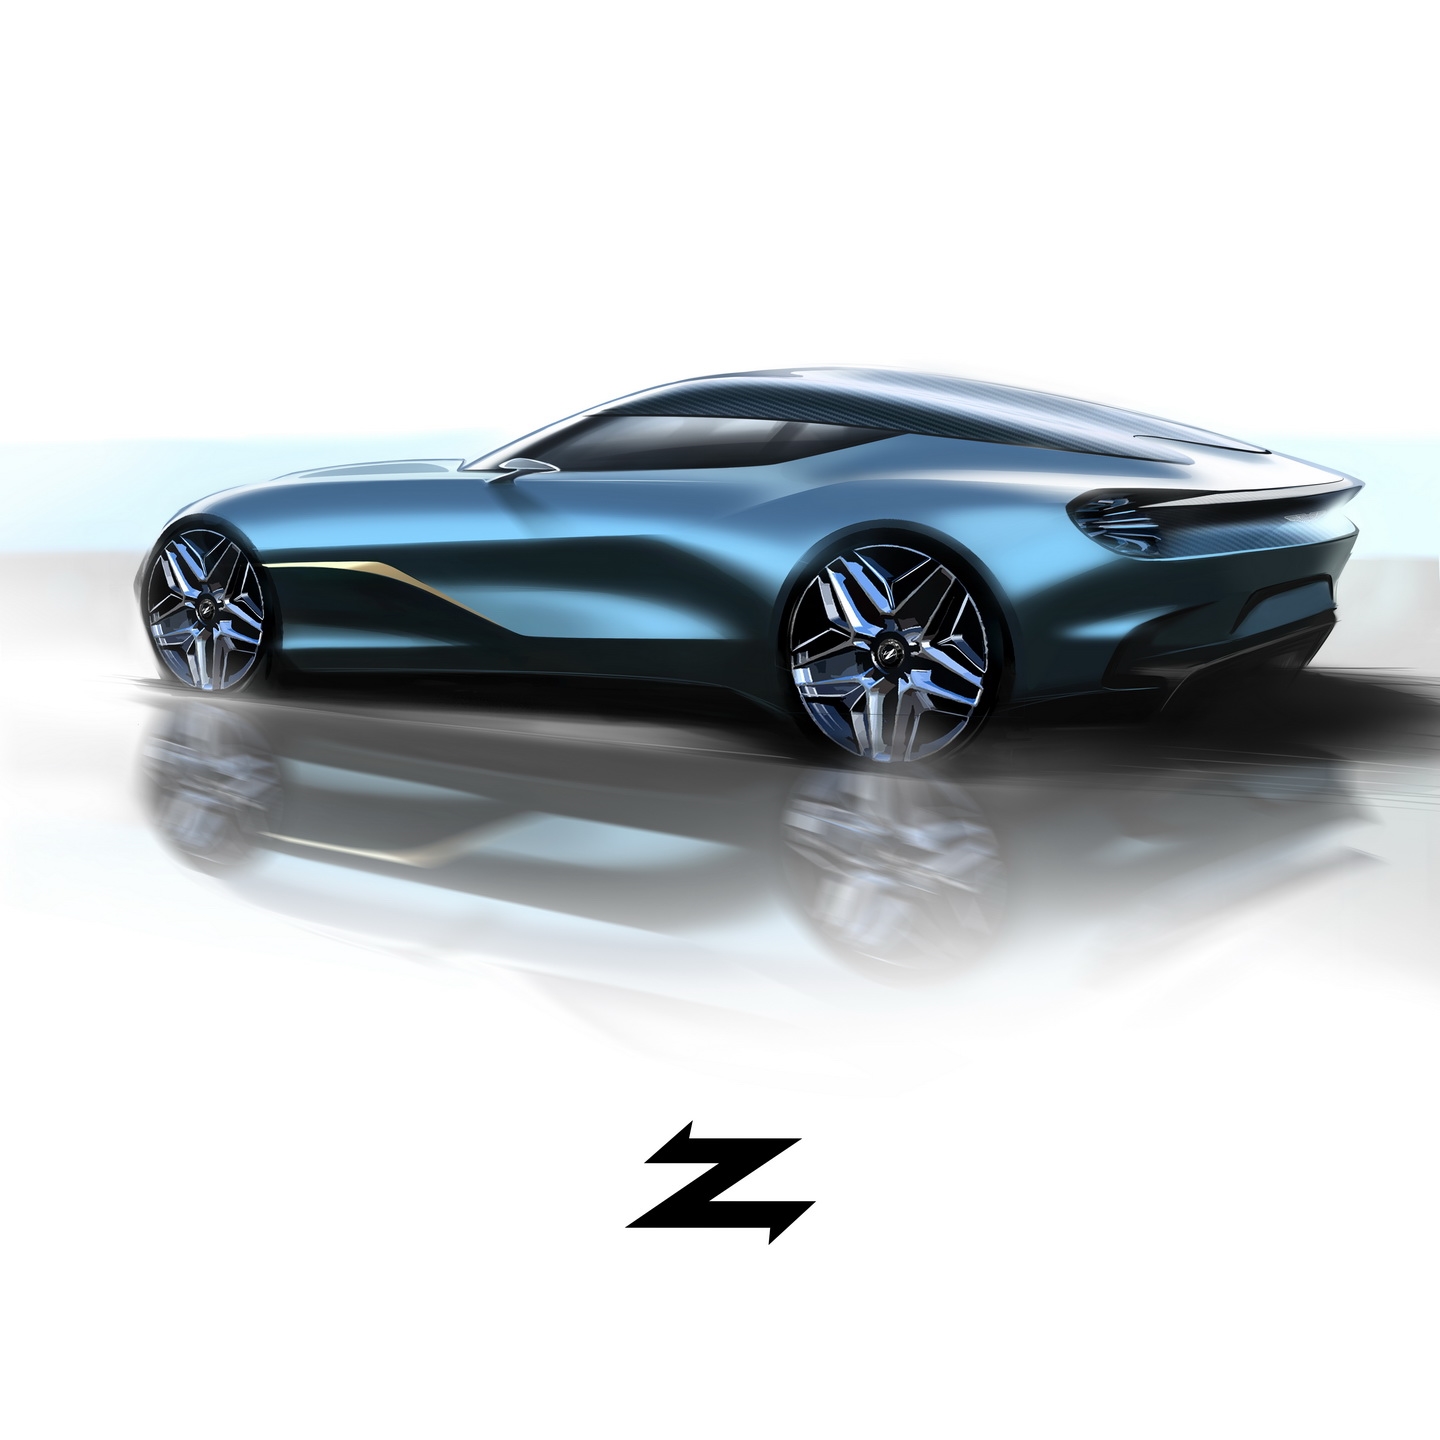 限量19台DBS GT Zagato官图正式发布_设计